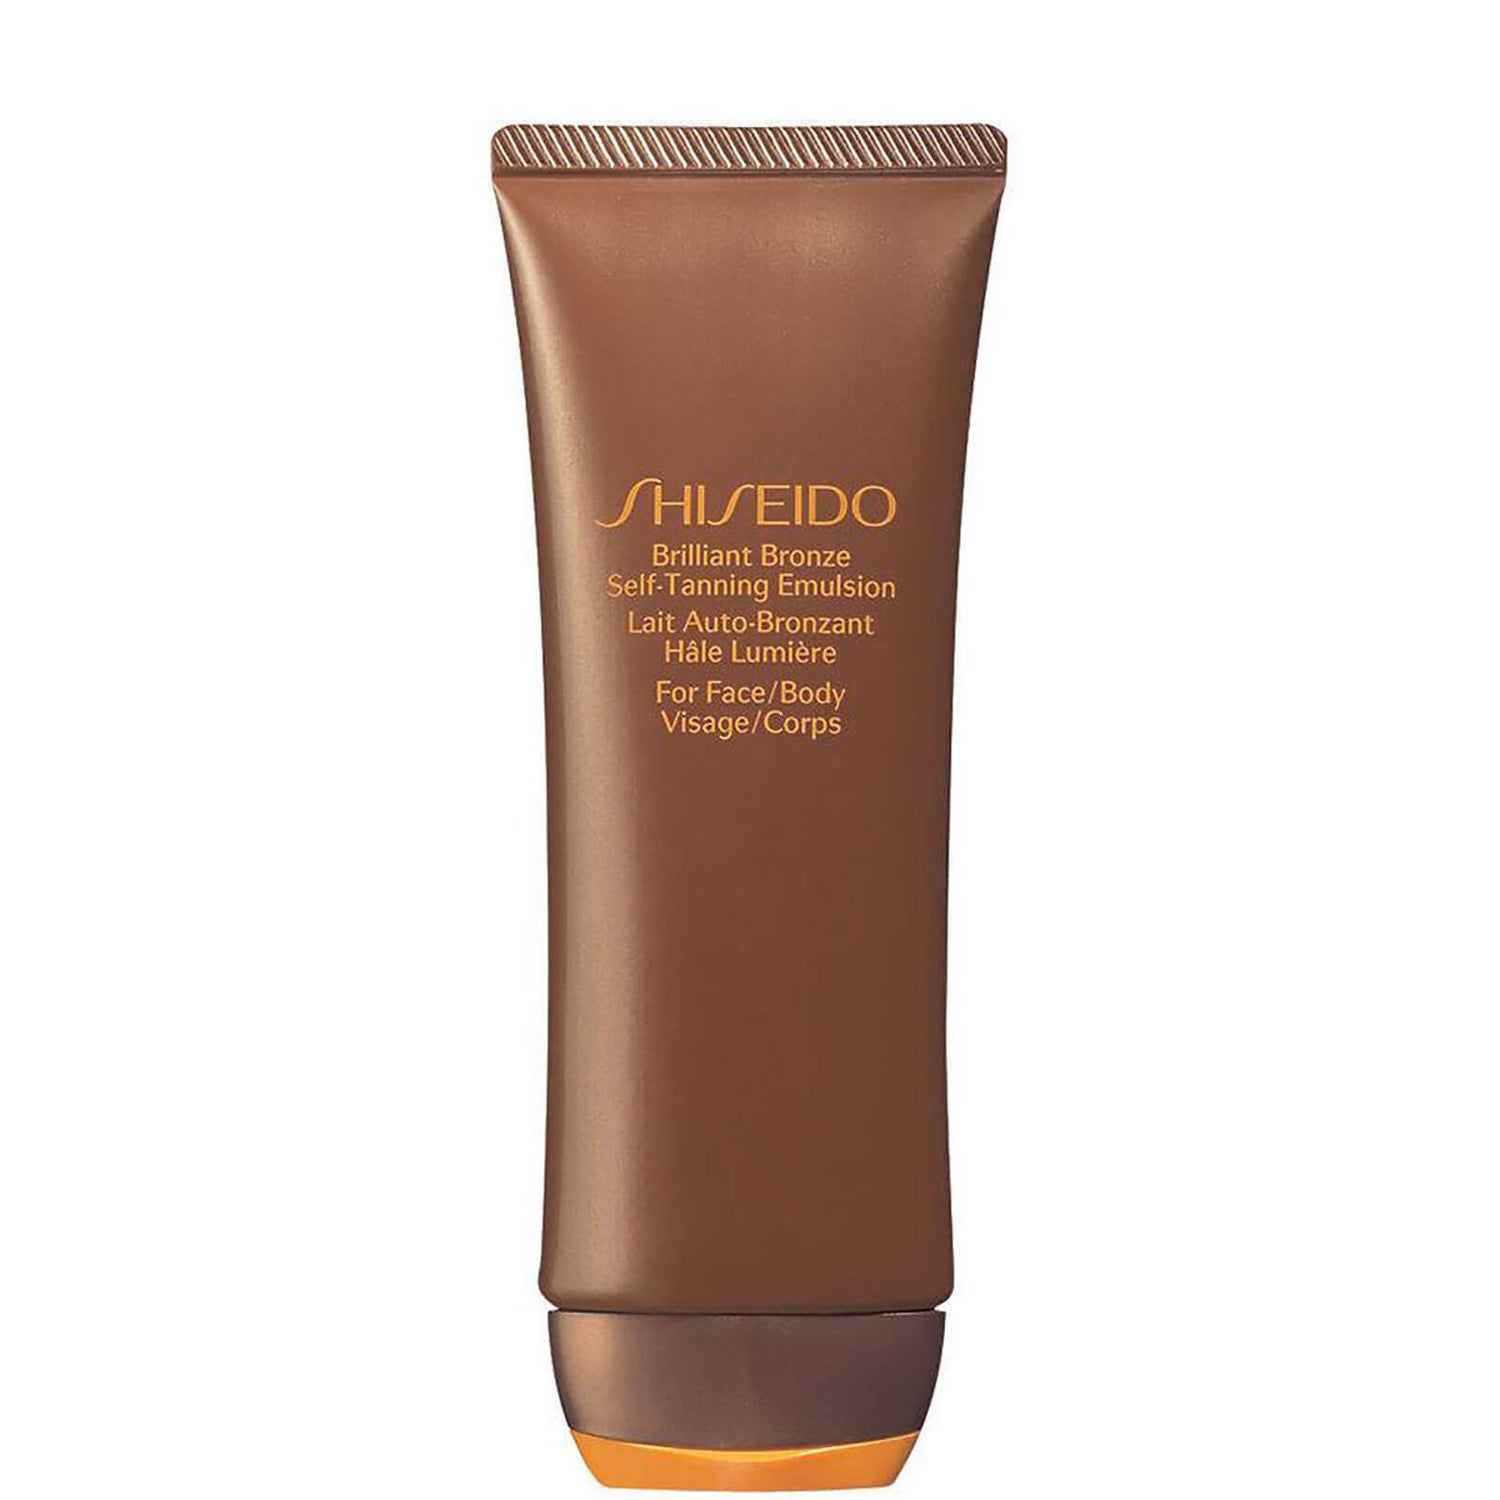 Brilliant Bronze Self Tanning Emulsion de Shiseido (pour le visage et le corps) (100ml)